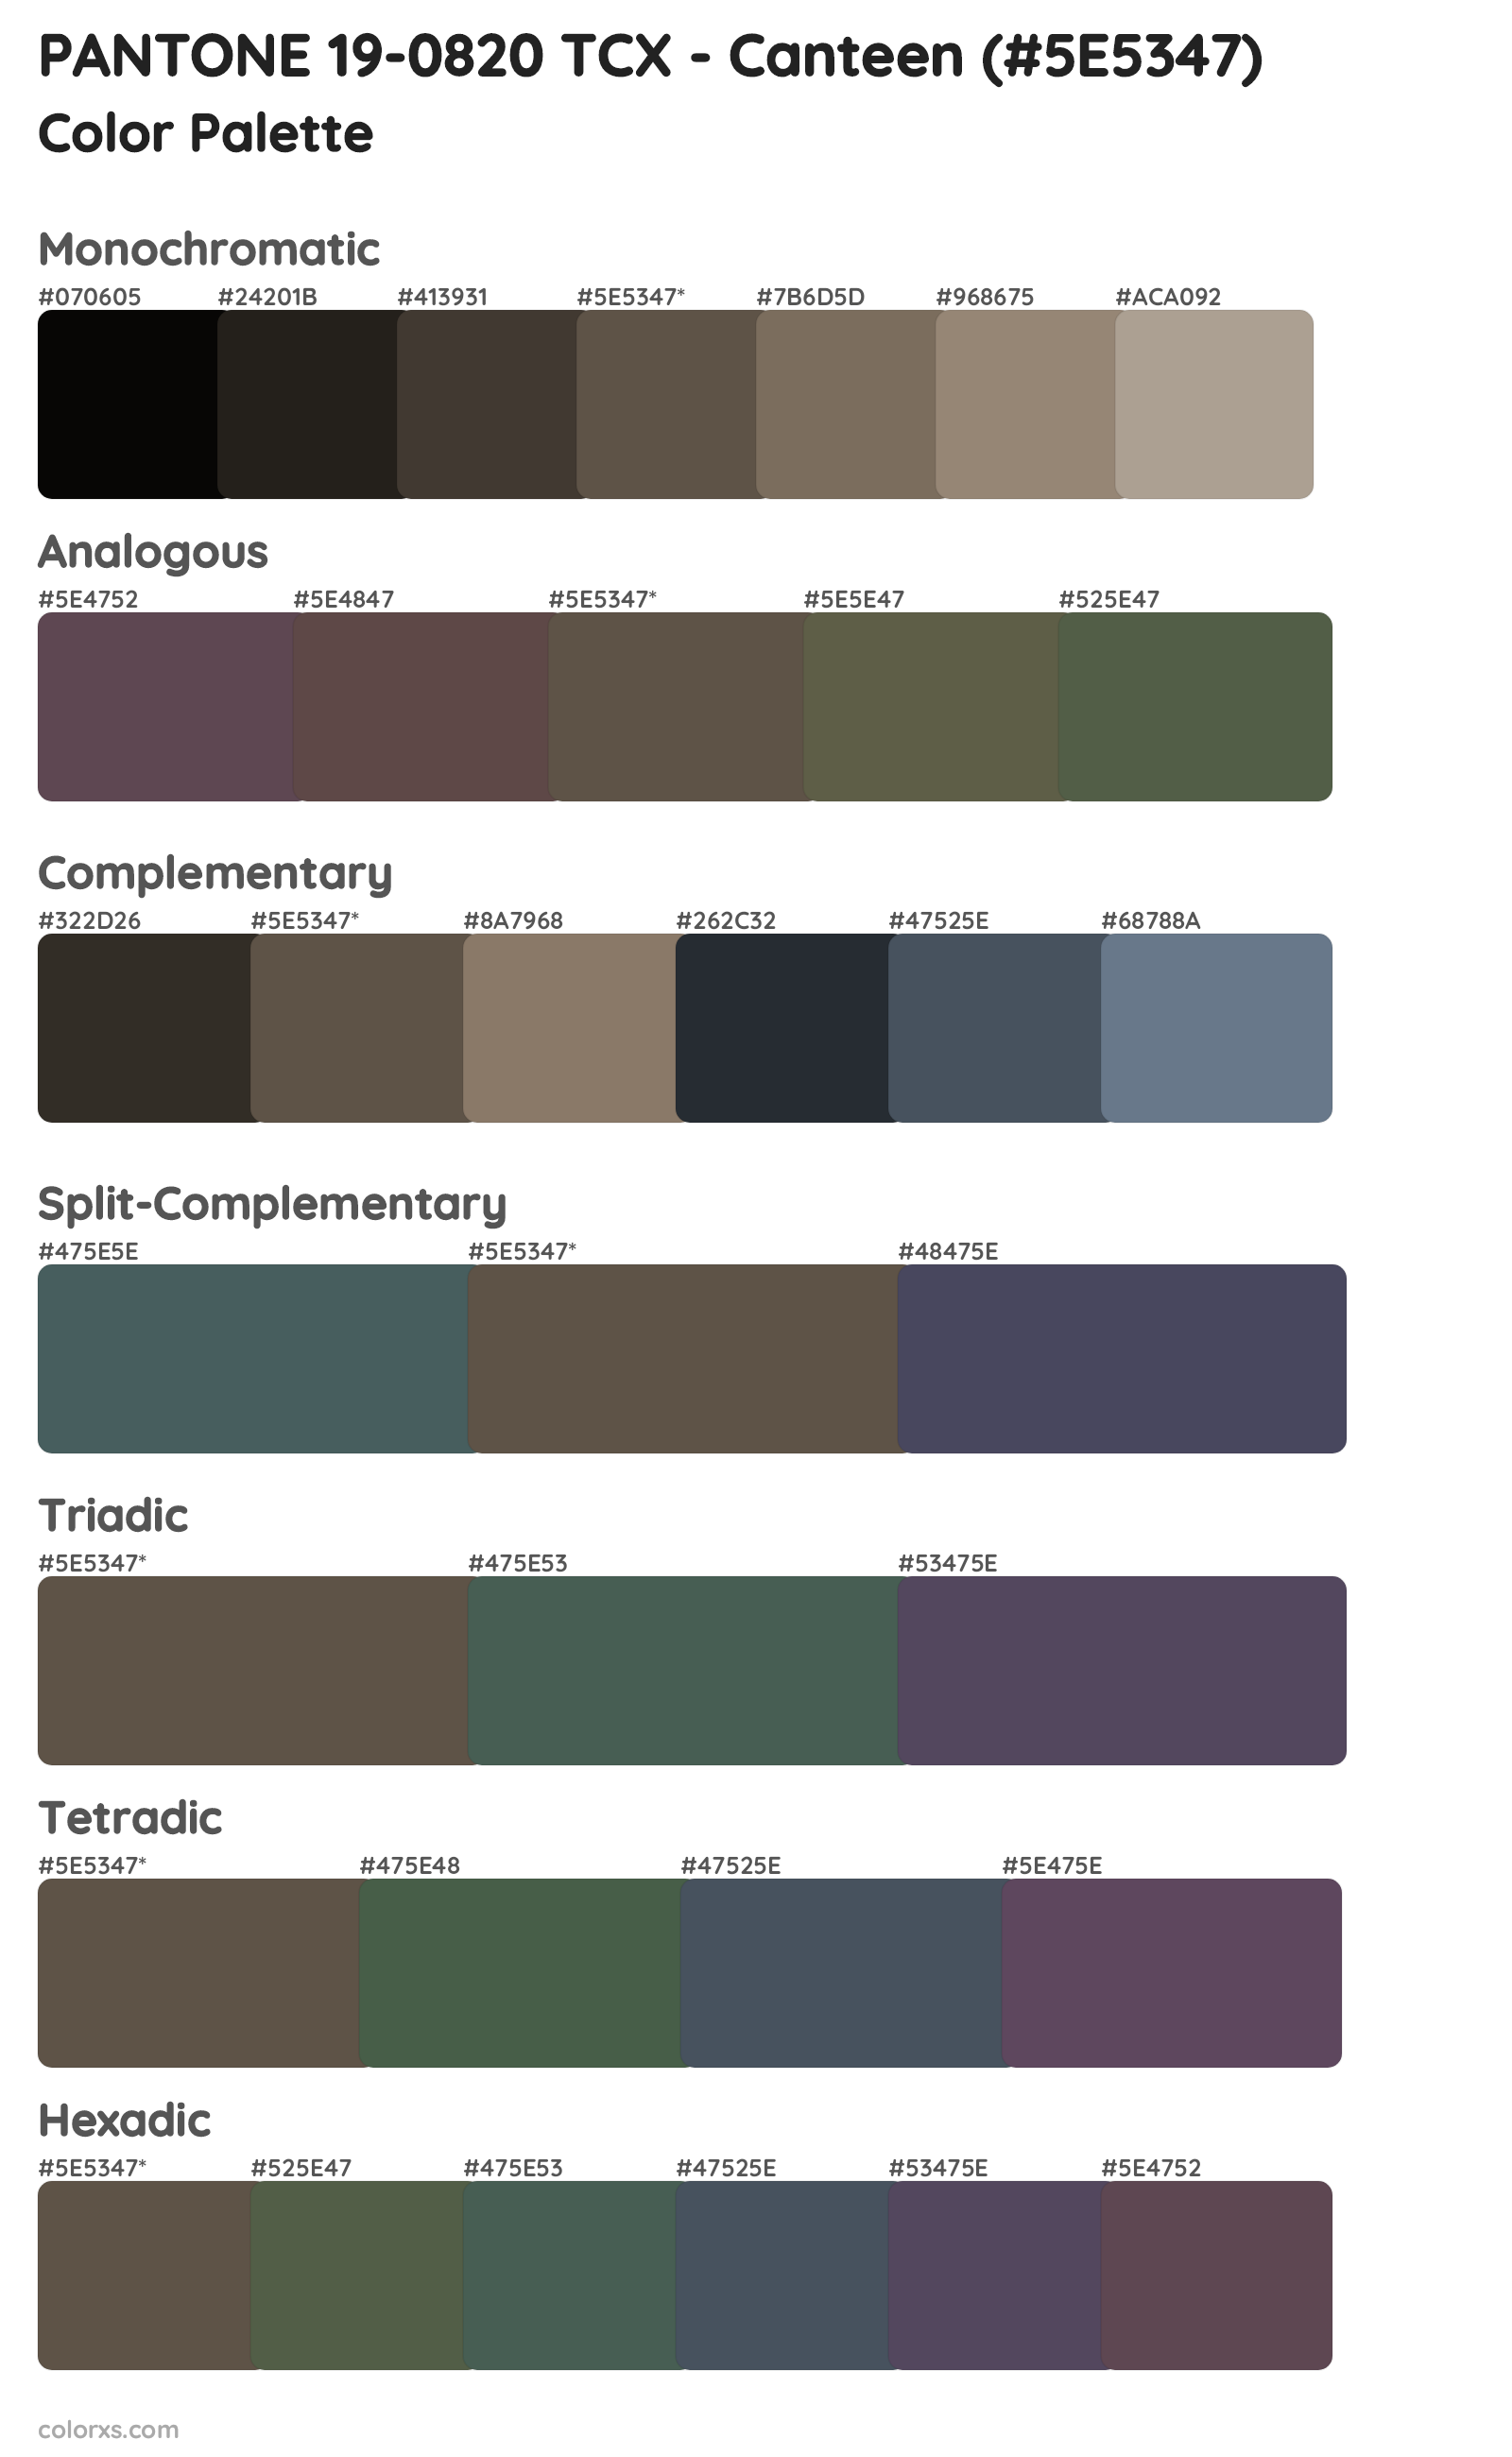 PANTONE 19-0820 TCX - Canteen Color Scheme Palettes